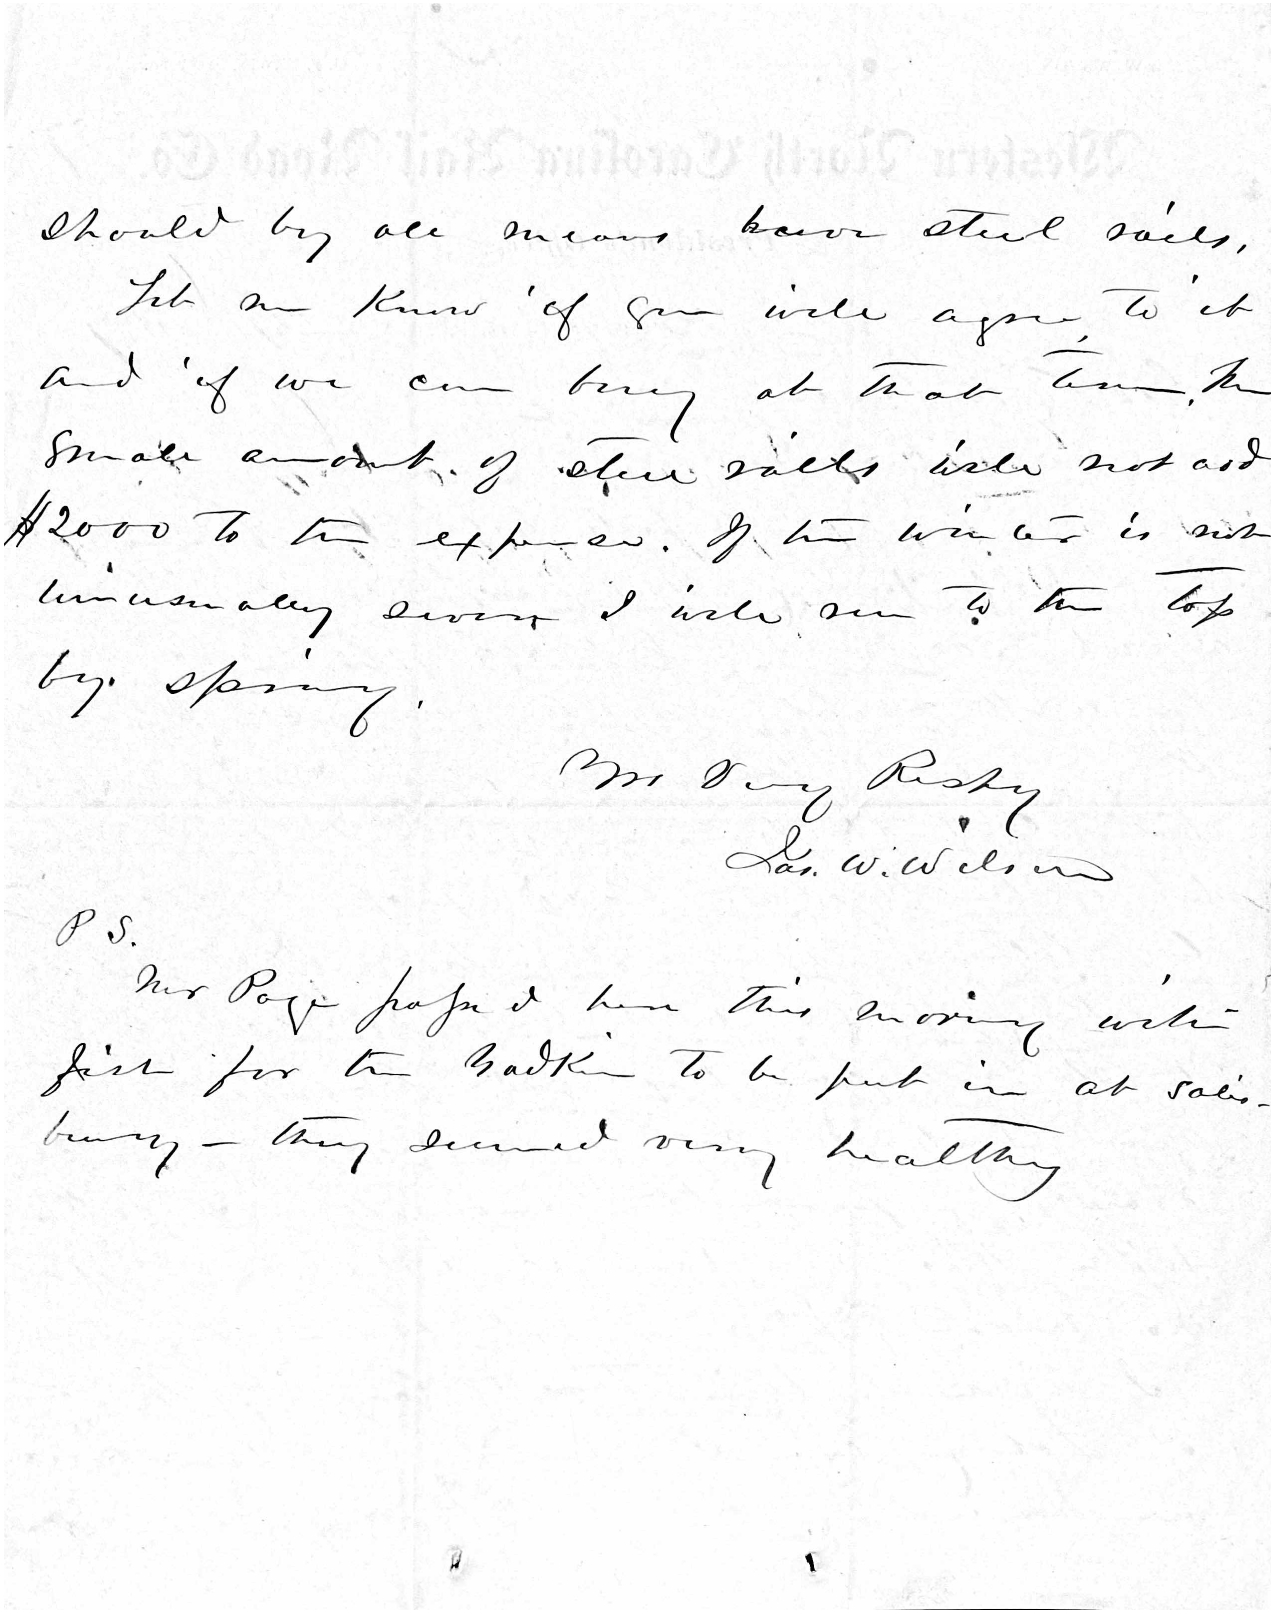 Letter from James W. Wilson to Zebulon B. Vance, 17 December 1877